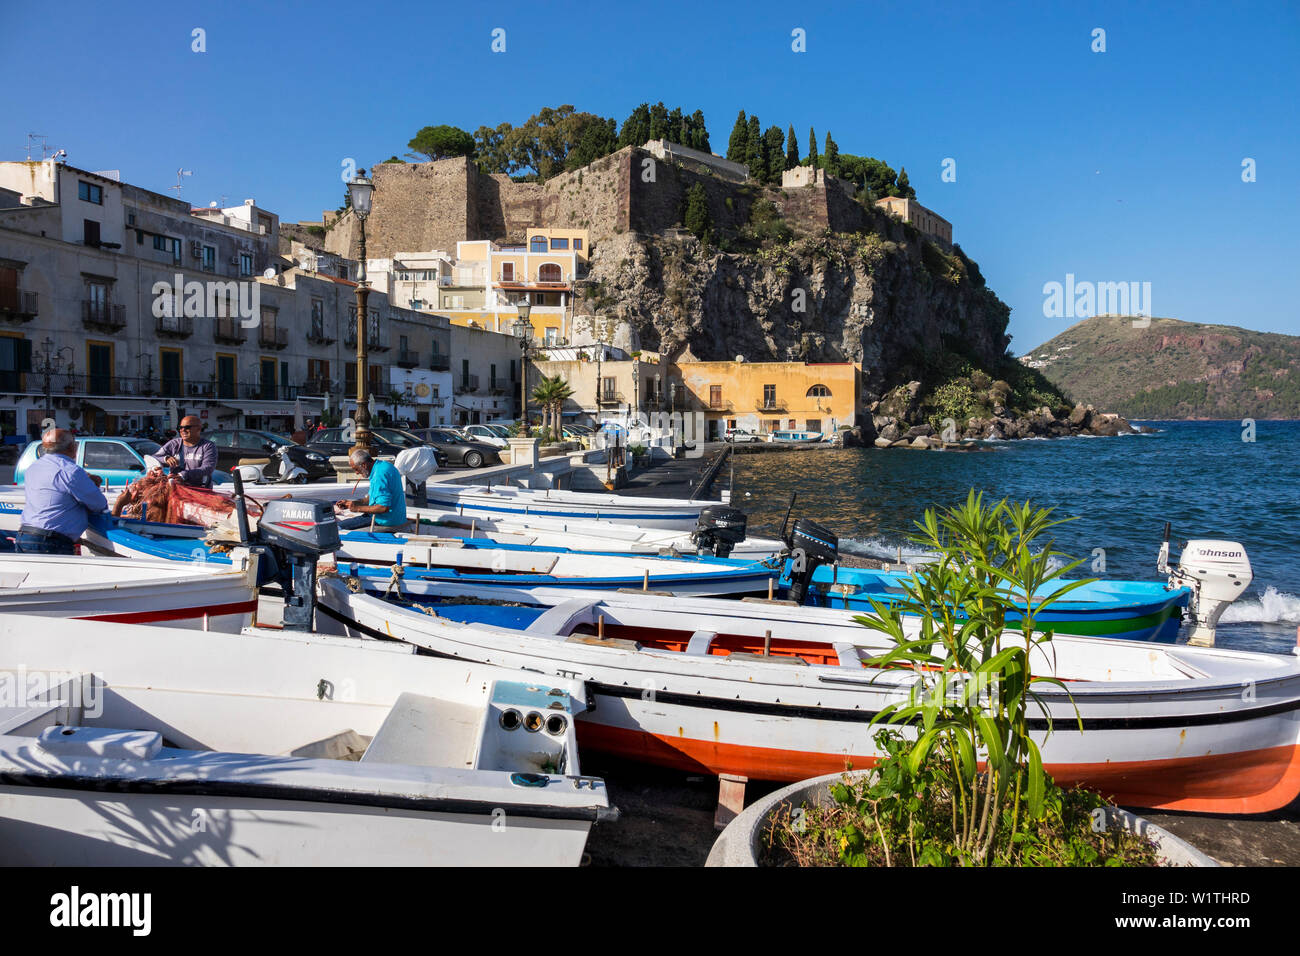 Hafen Marina Corta, Lipari Stadt, Insel Lipari, Äolische Inseln Lipari Inseln, Meer, Mittelmeer, Italien, Europa Stockfoto